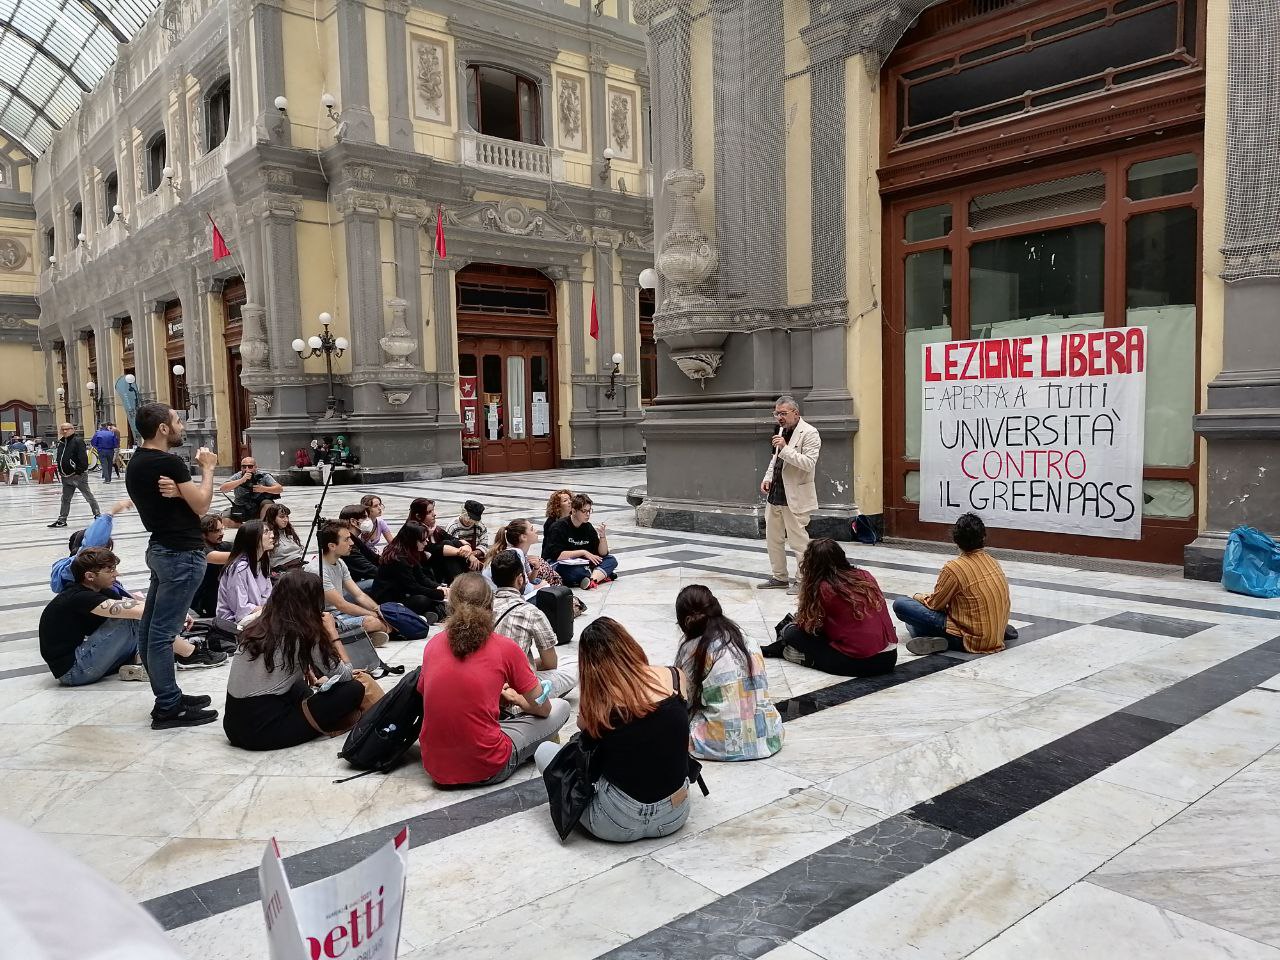 Napoli, lezioni universitarie all’aperto: la letteratura sconfigge il Green Pass